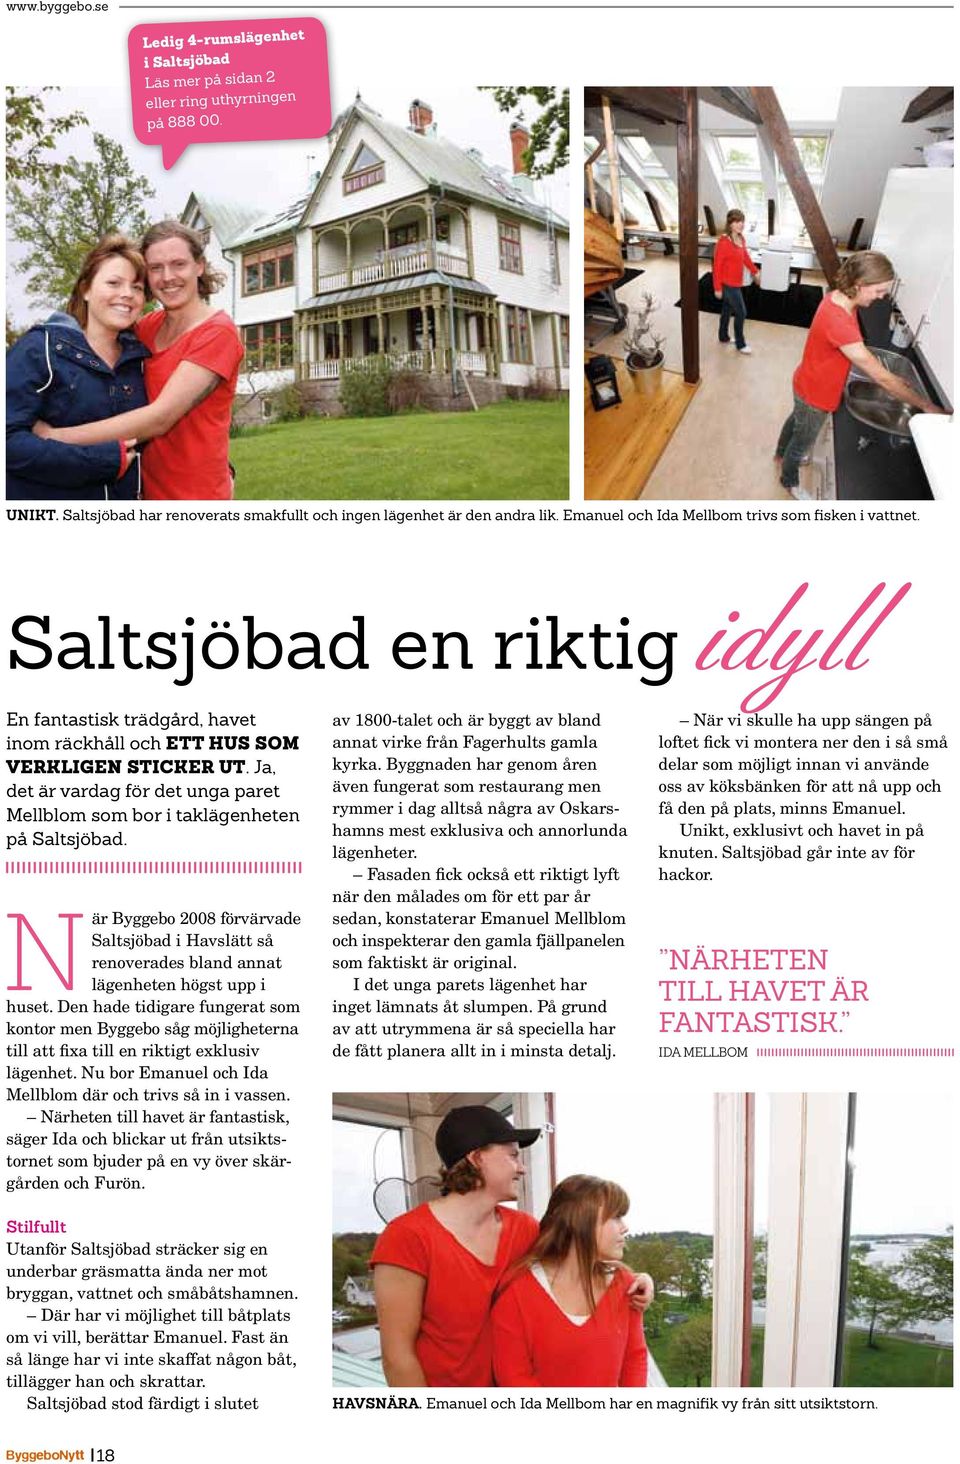 Ja, det är vardag för det unga paret Mellblom som bor i taklägenheten på Saltsjöbad. När Byggebo 2008 förvärvade Saltsjöbad i Havslätt så renoverades bland annat lägenheten högst upp i huset.